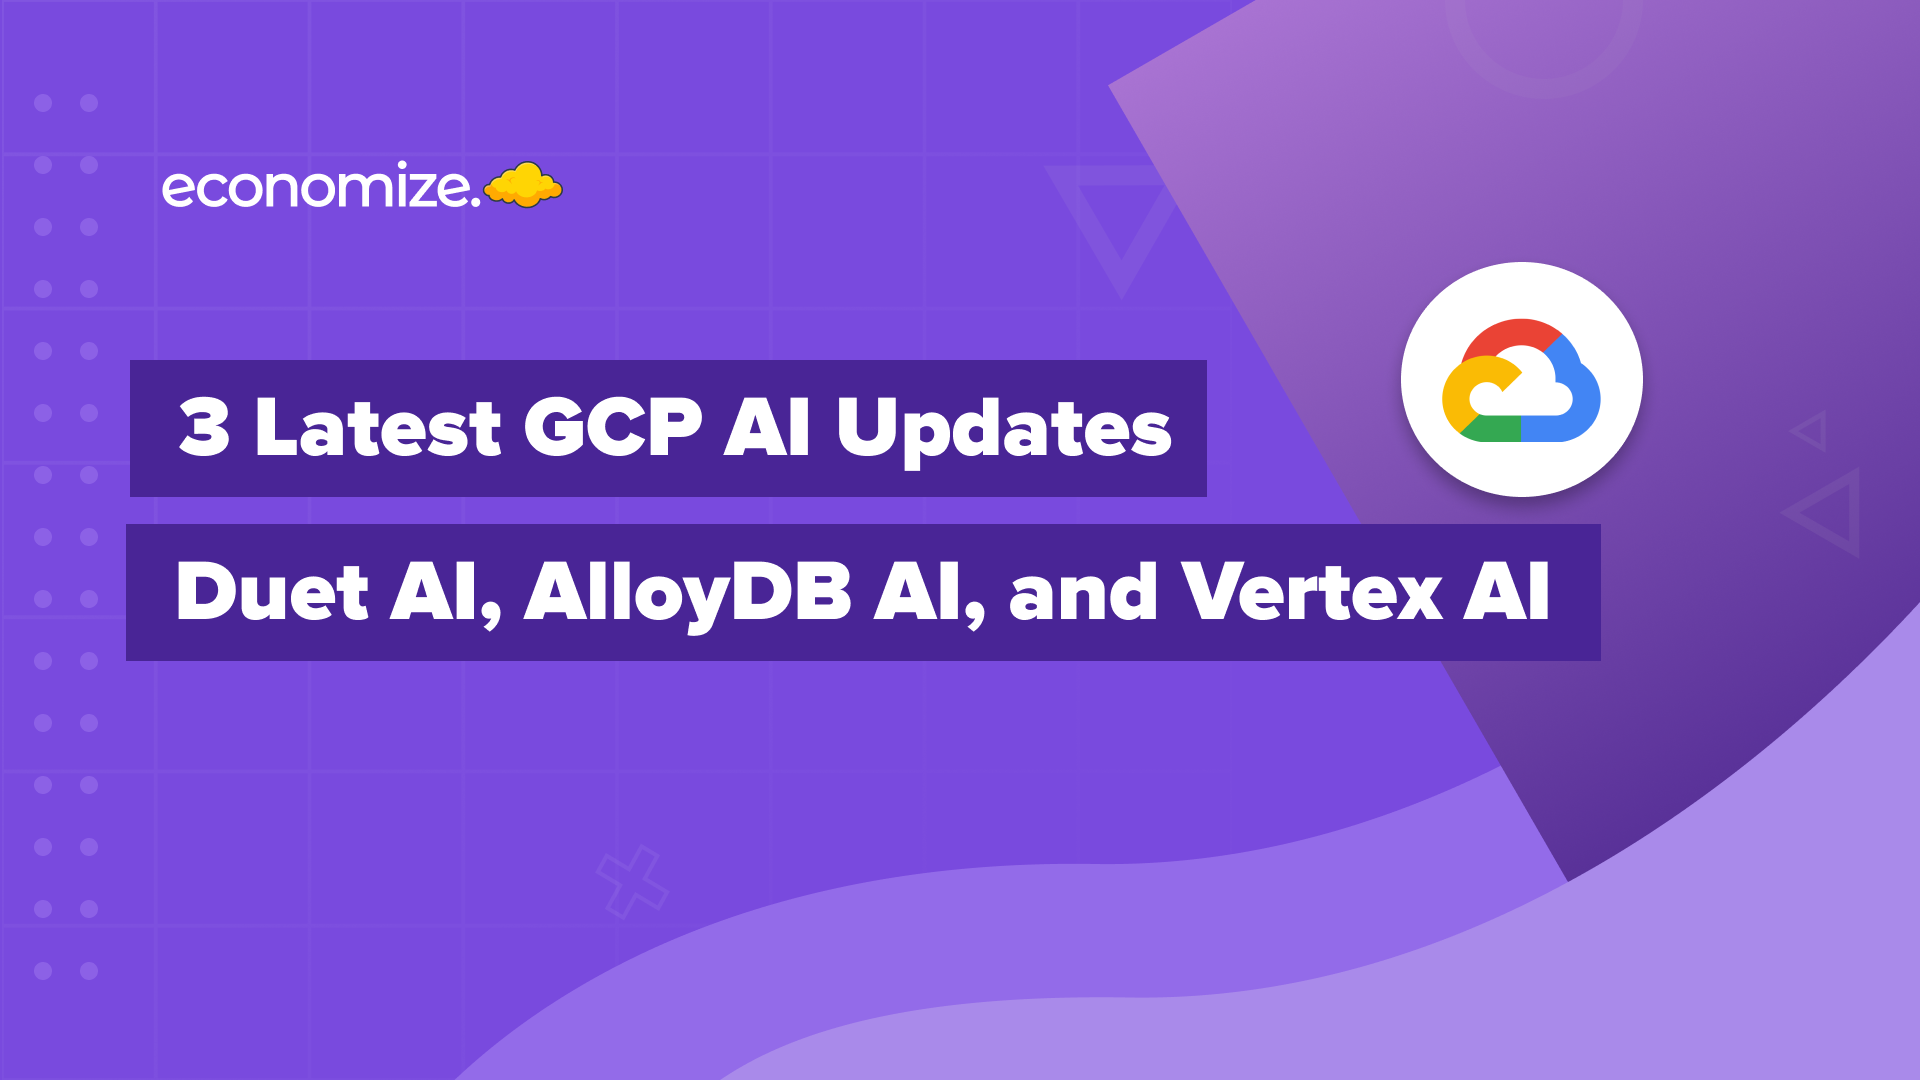 Duet AI, GCP AI, Vertex AI, AlloyDB AI